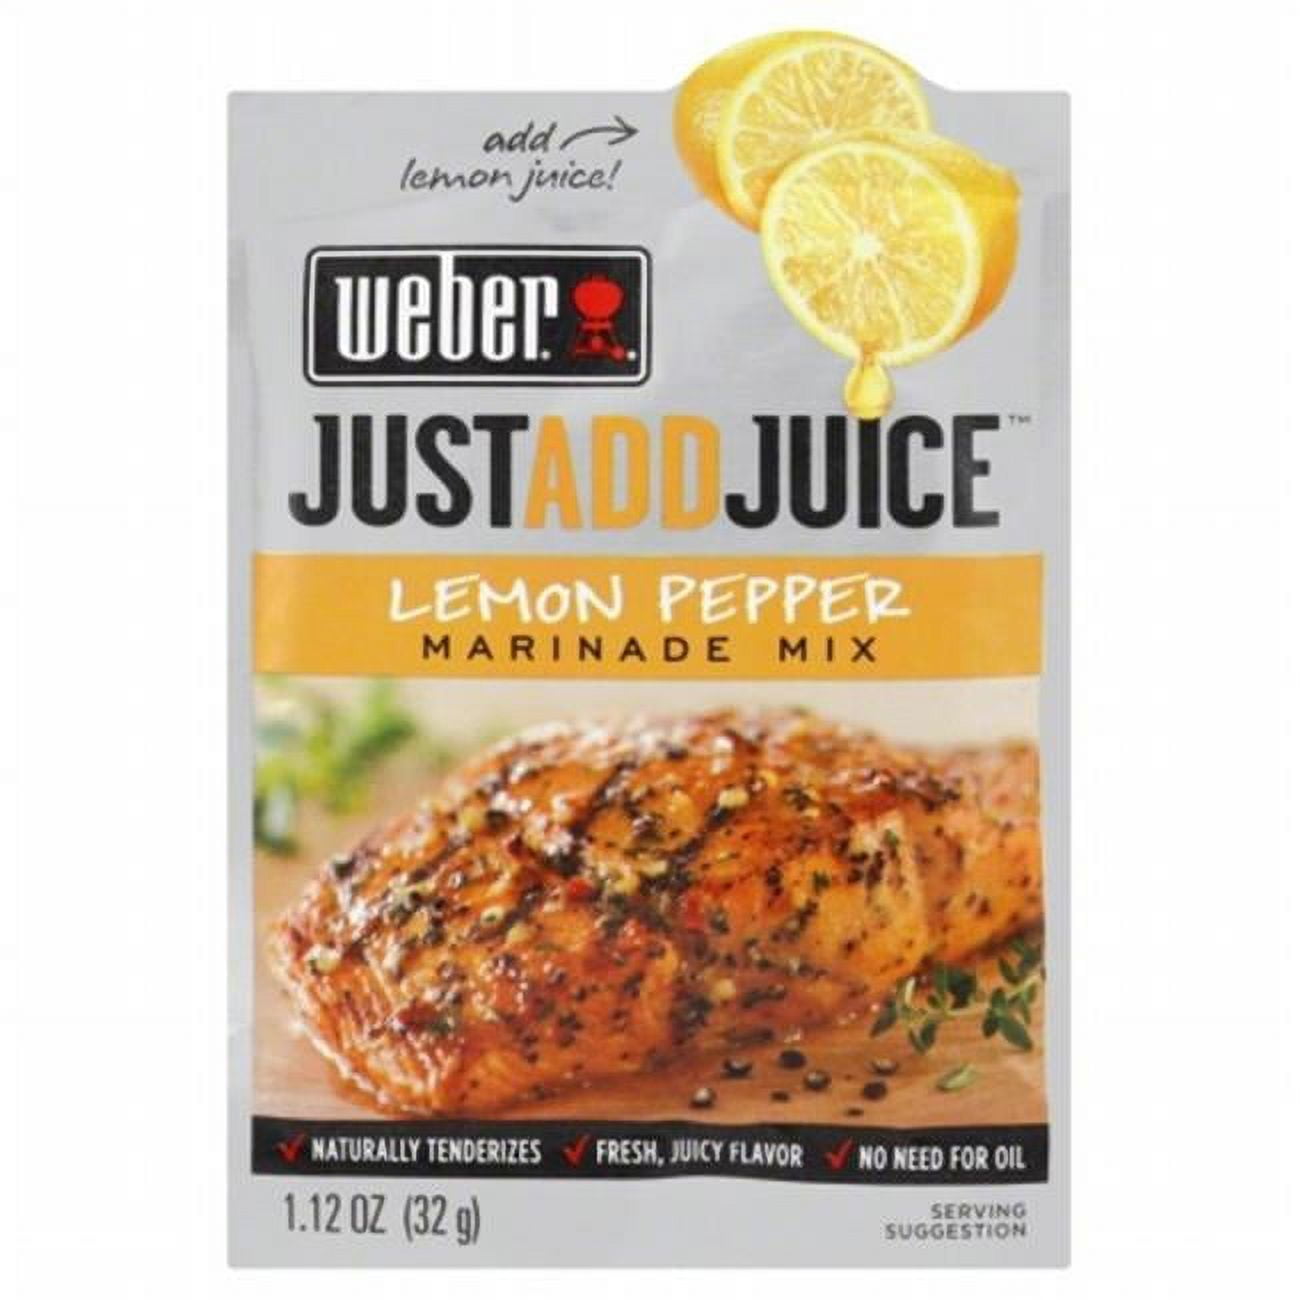 Weber Just Add Juice Marinade Mix Lemon Pepper 1.12 OZ